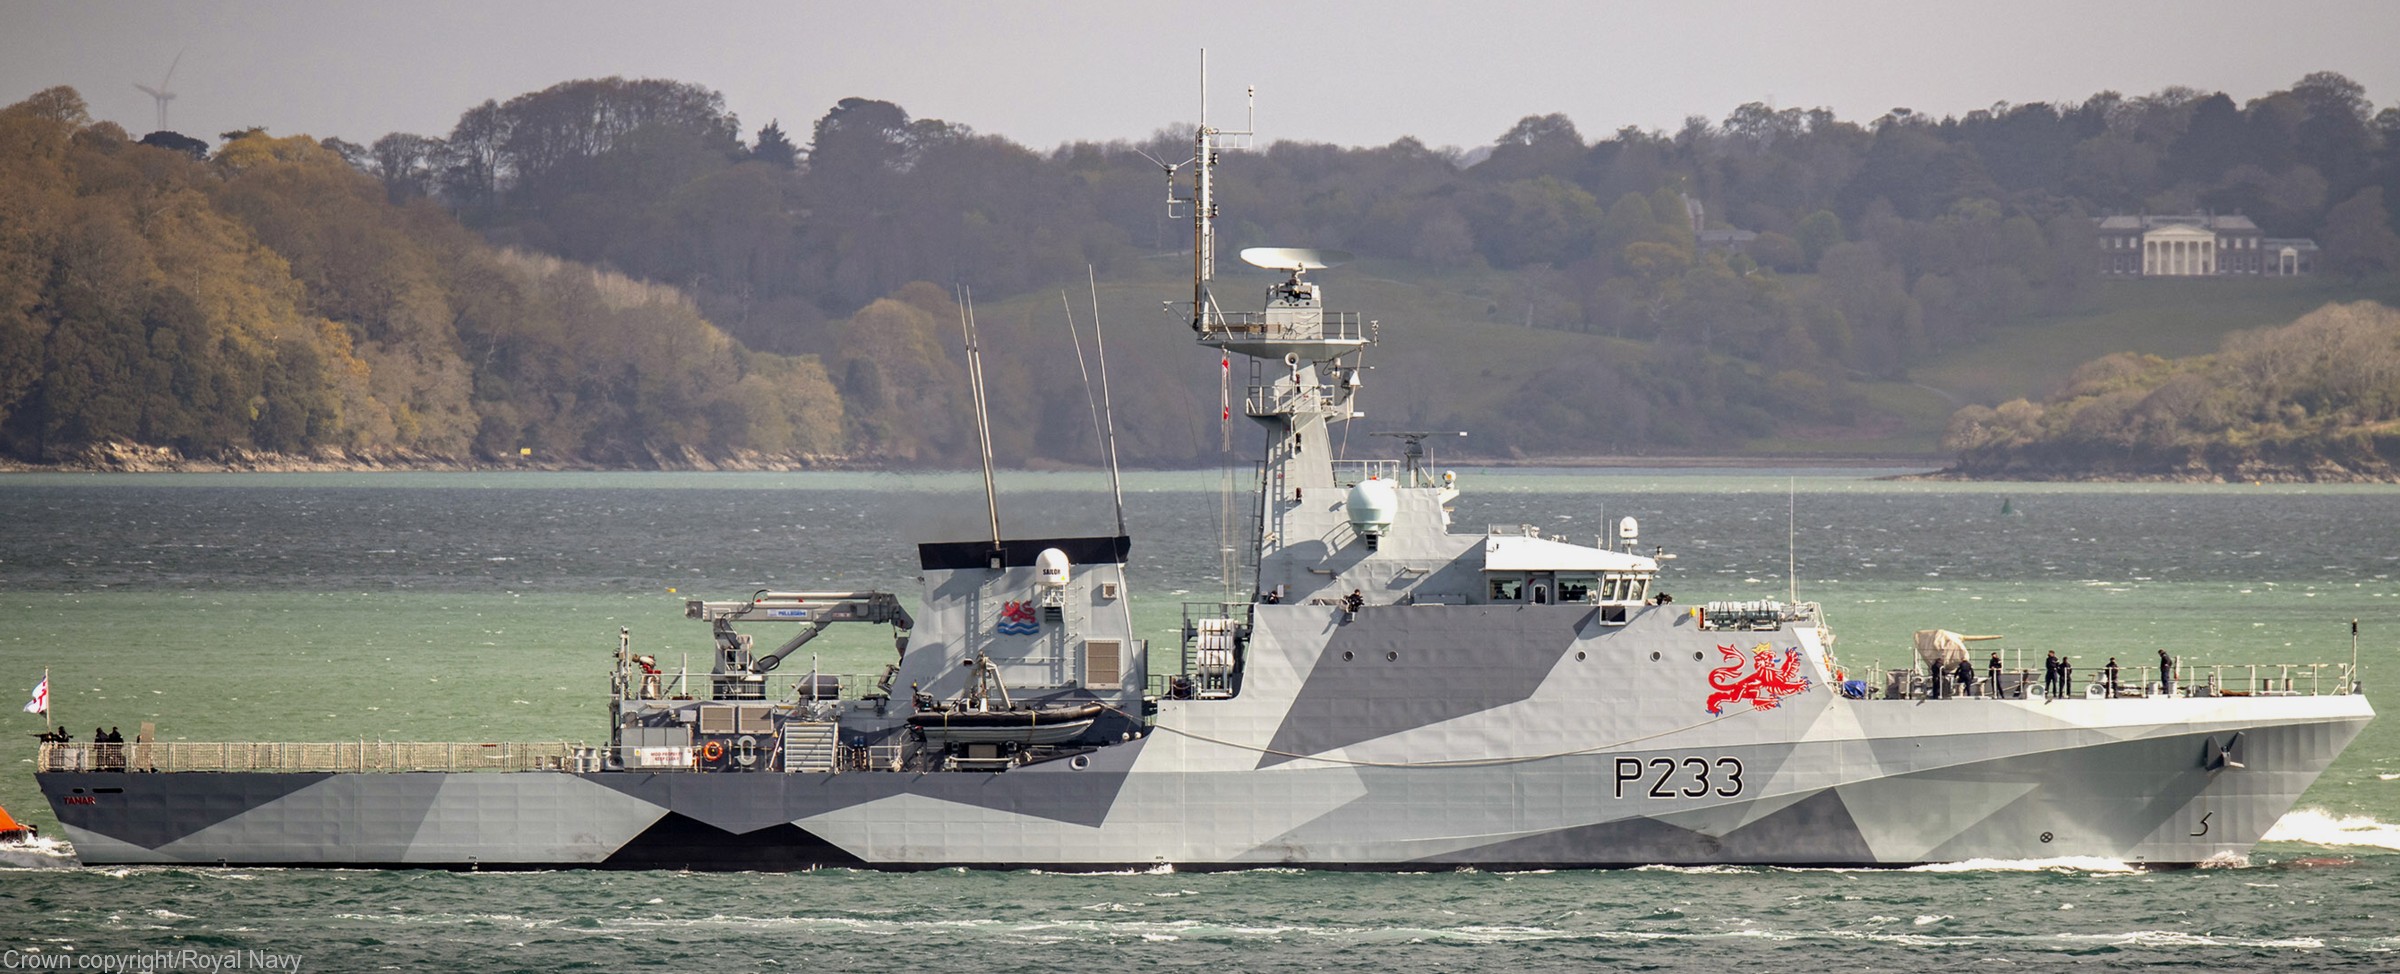 p-233 hms tamar river class offshore patrol vessel opv royal navy 18 dazzle camouflage paint scheme